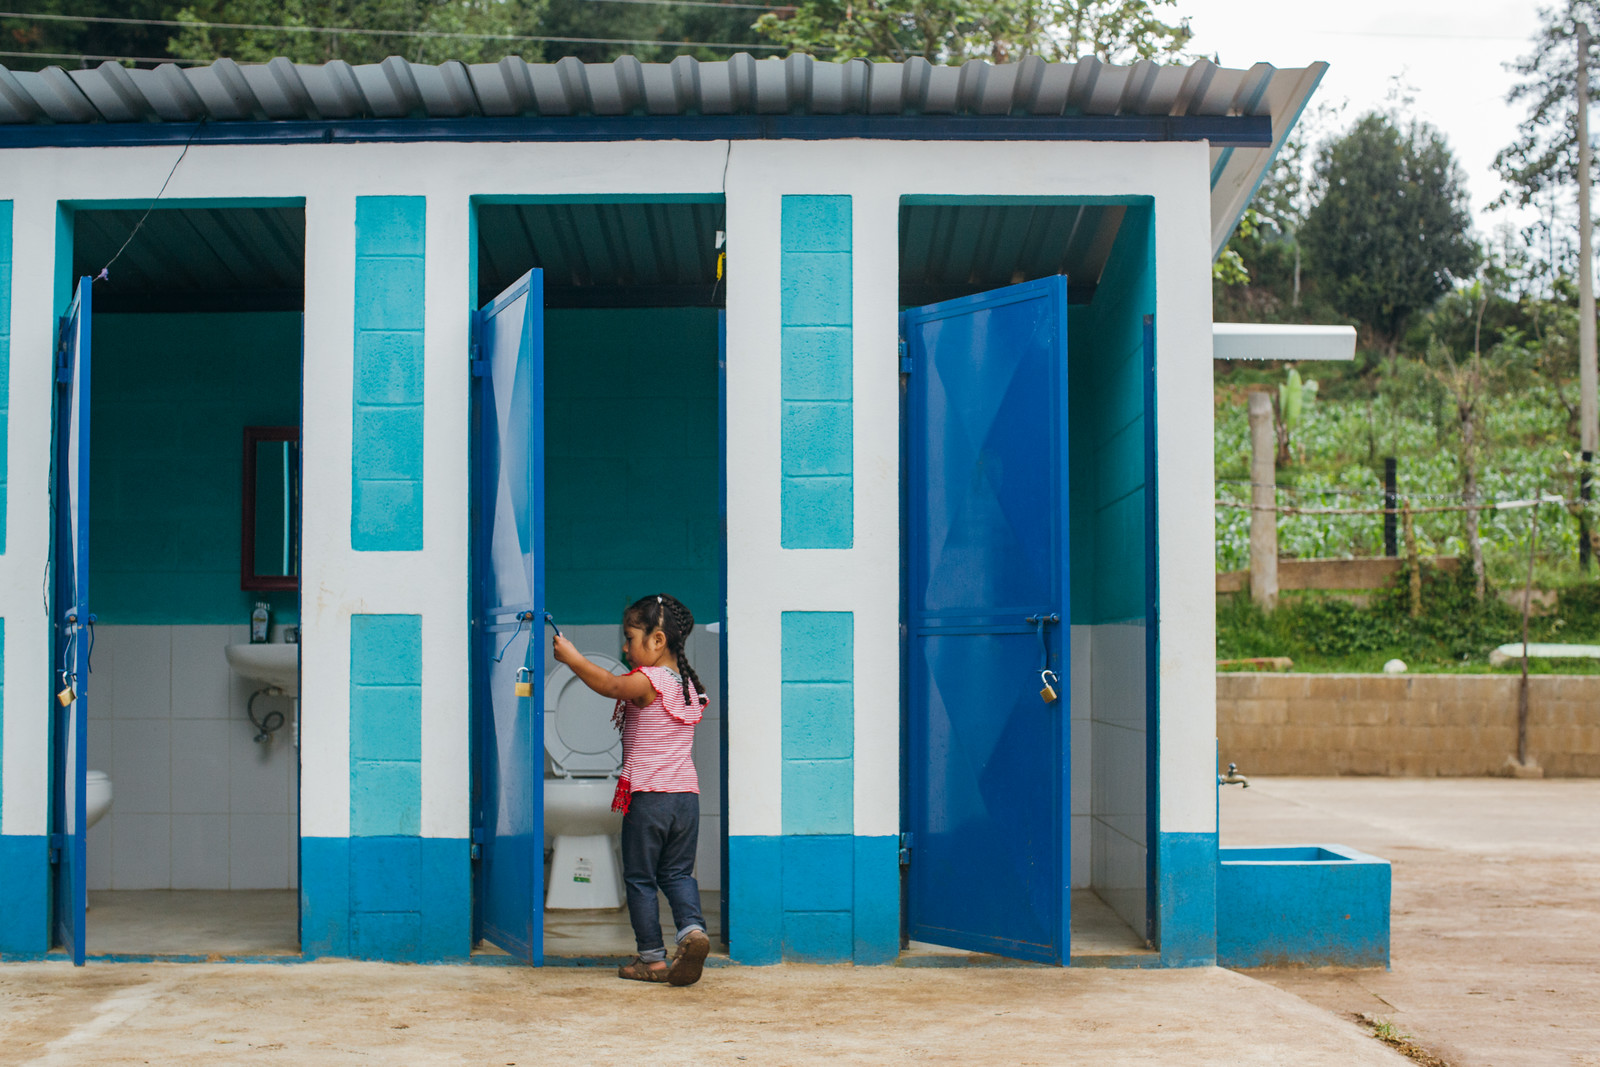 Scott y su programa “Baños Cambian Vidas” beneficiarán a 12 comunidades y 10.087 personas en 4 municipios de Guatemala